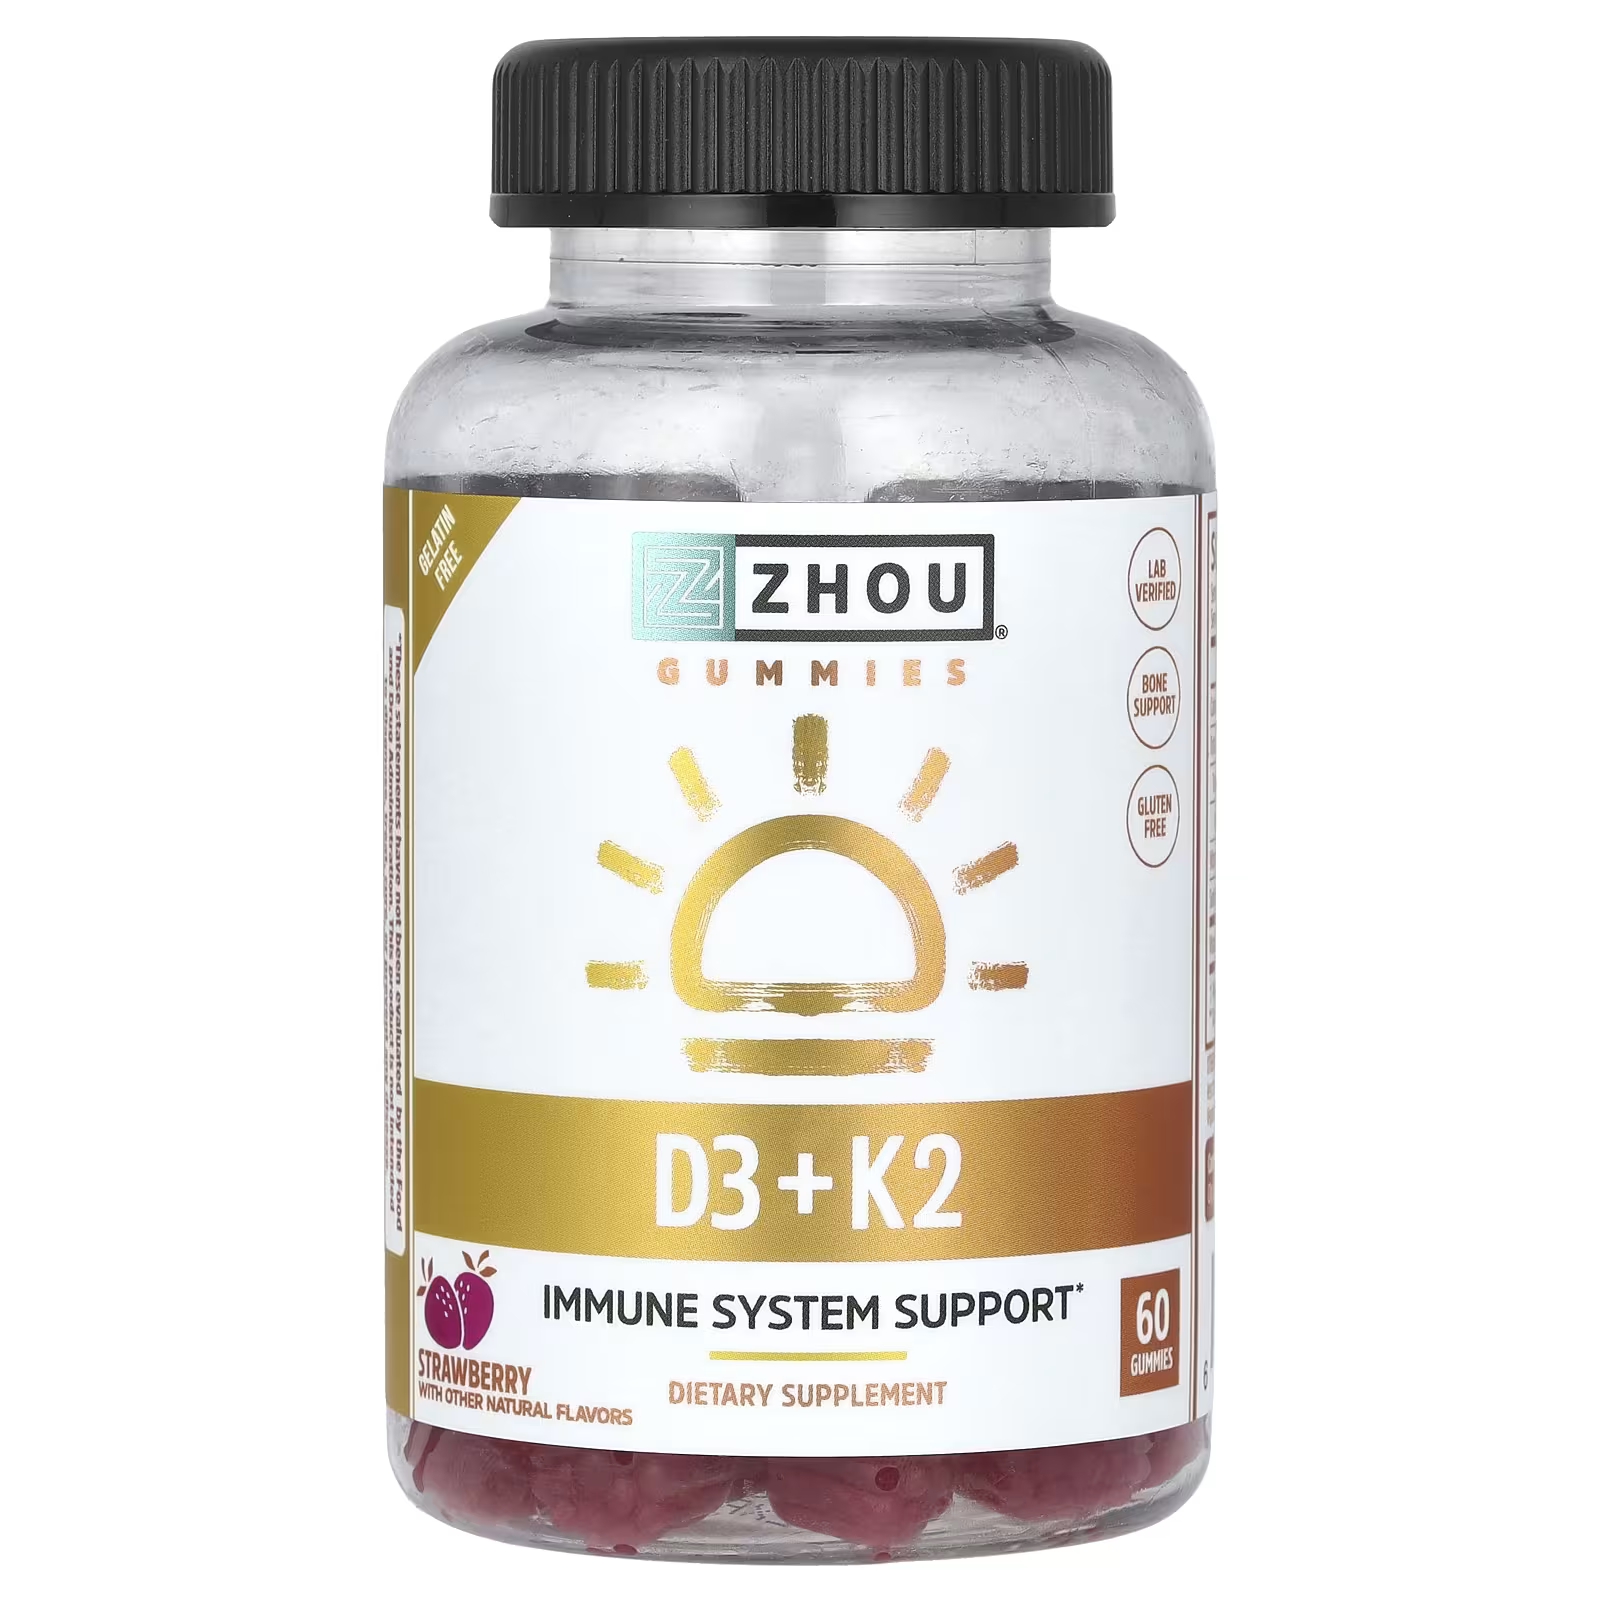 Пищевая добавка Zhou Nutrition D3 + K2 с клубникой, 60 жевательных конфет пищевая добавка k2 d3 zhou nutrition клубника 60 жевательных таблеток